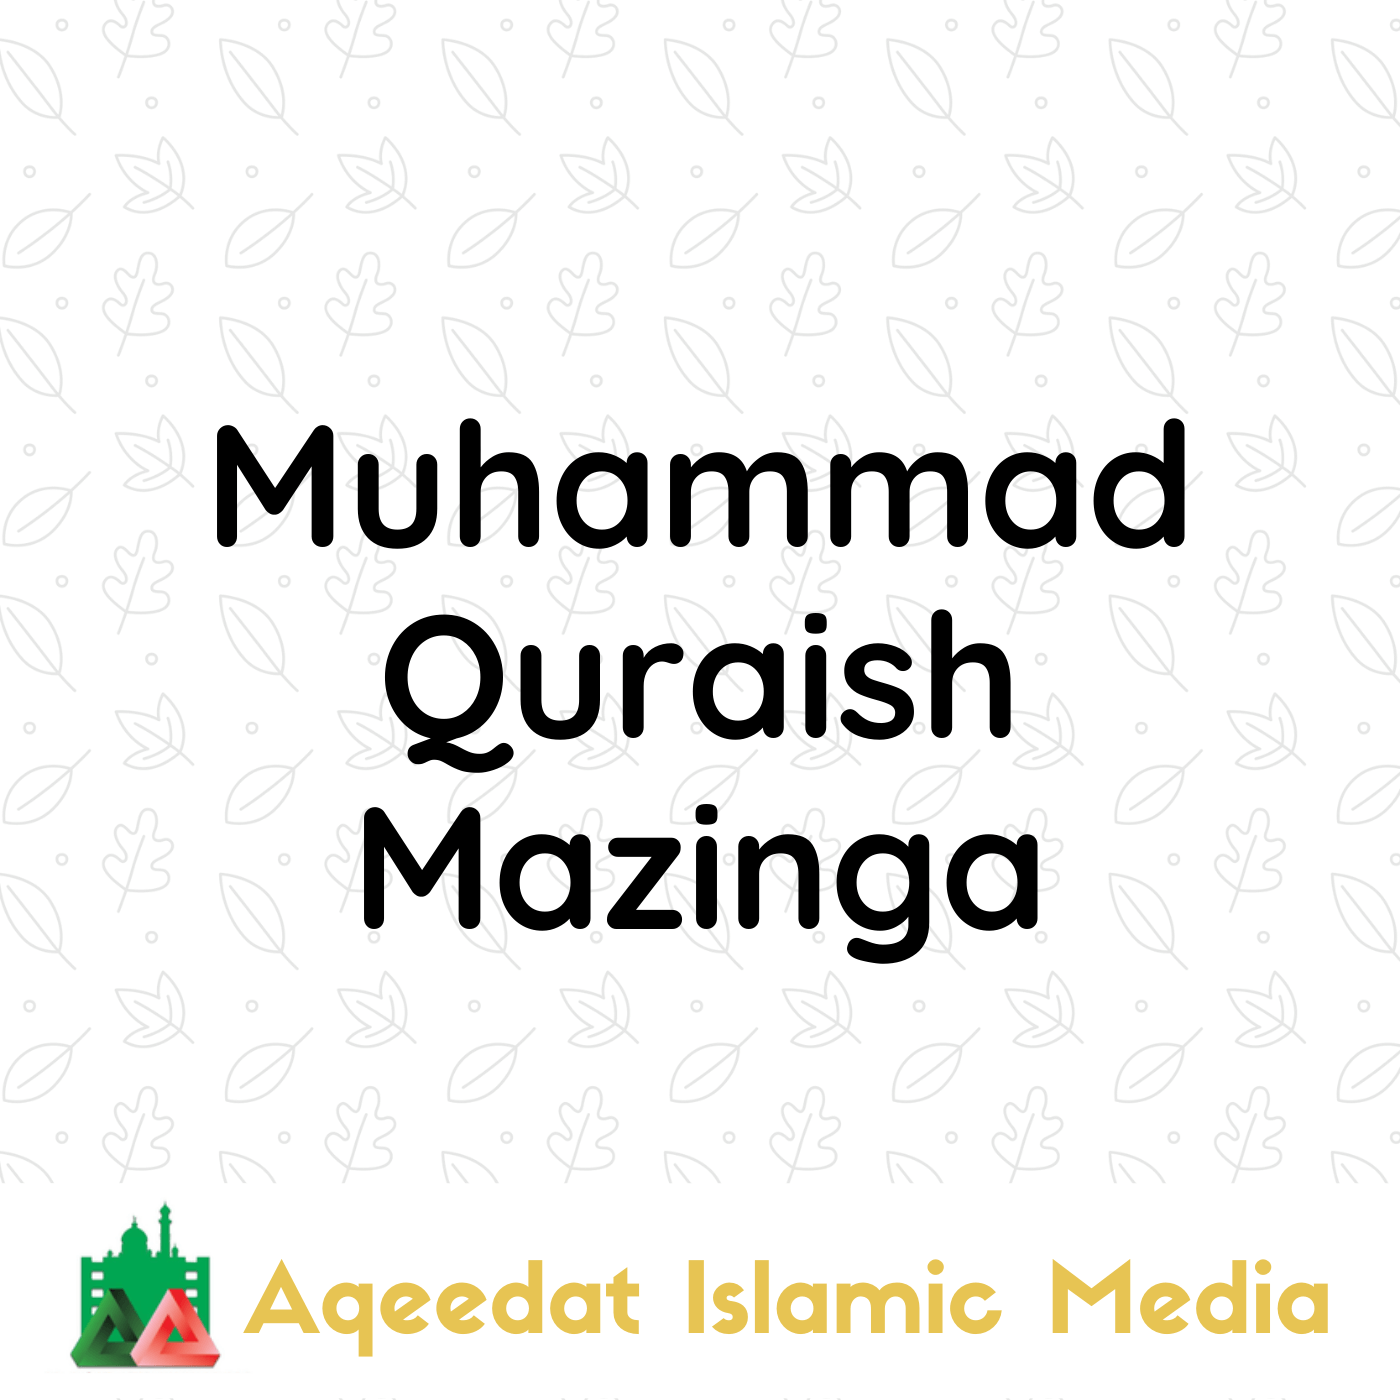  Muhammad Quraish Mazinga